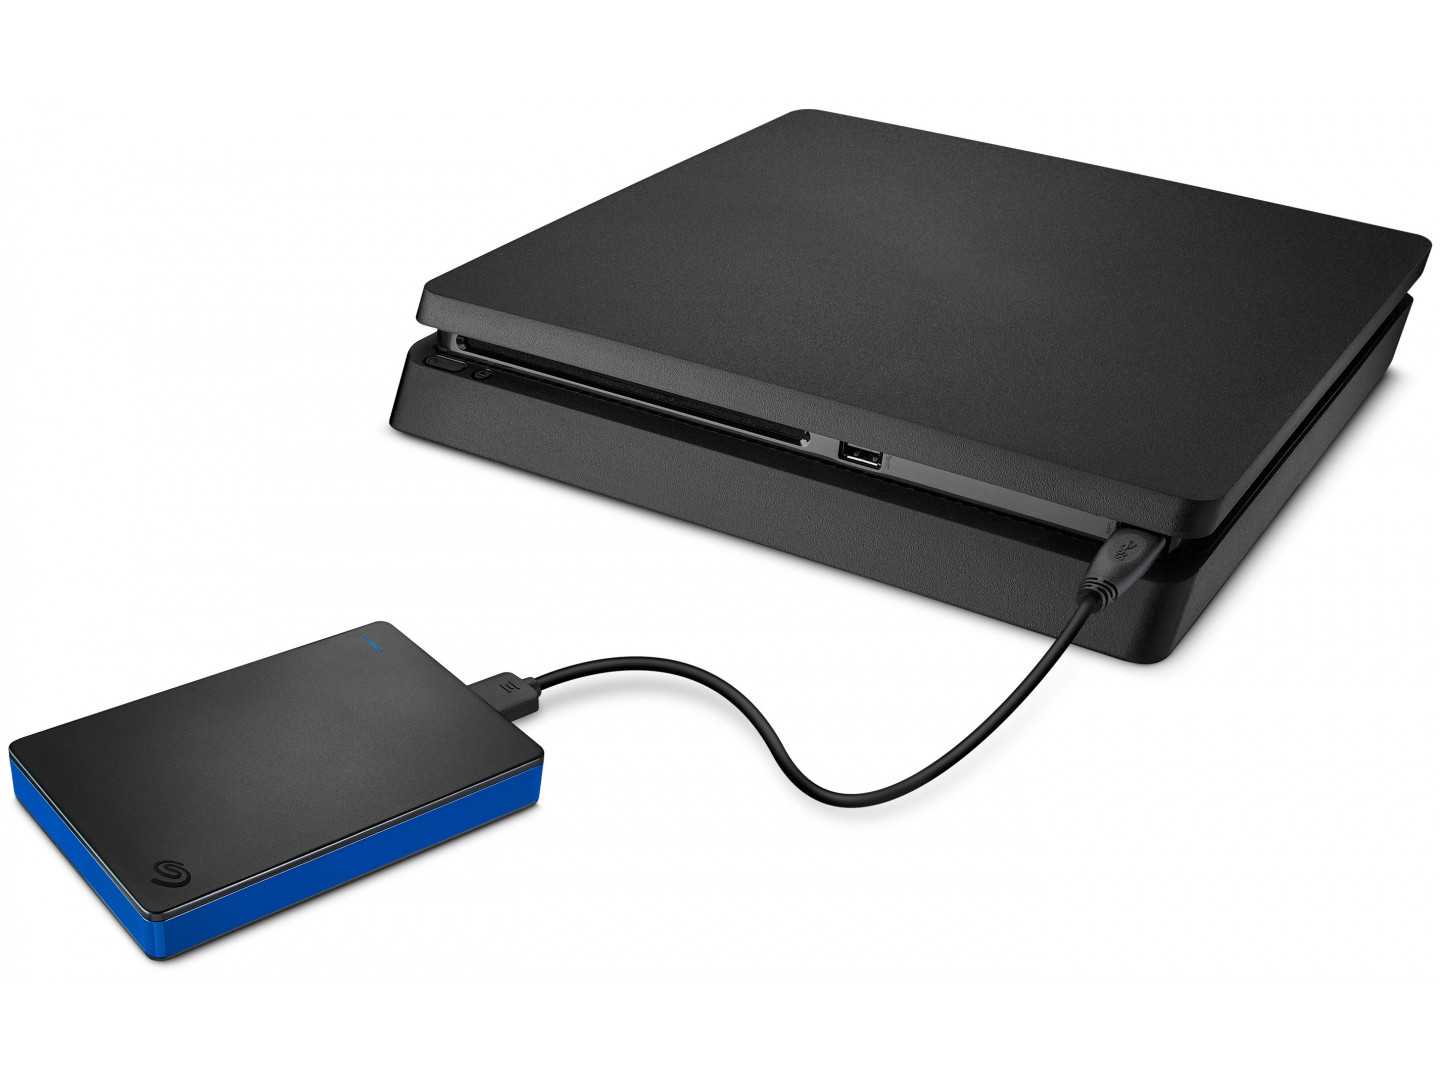 Как подключить внешний жесткий диск к PS4 Какие внешние накопители можно использовать на PlayStation 4, требования, которым они должны соответствовать Понятная инструкция по подключению, установке и отсоединению, решение возможных проблем